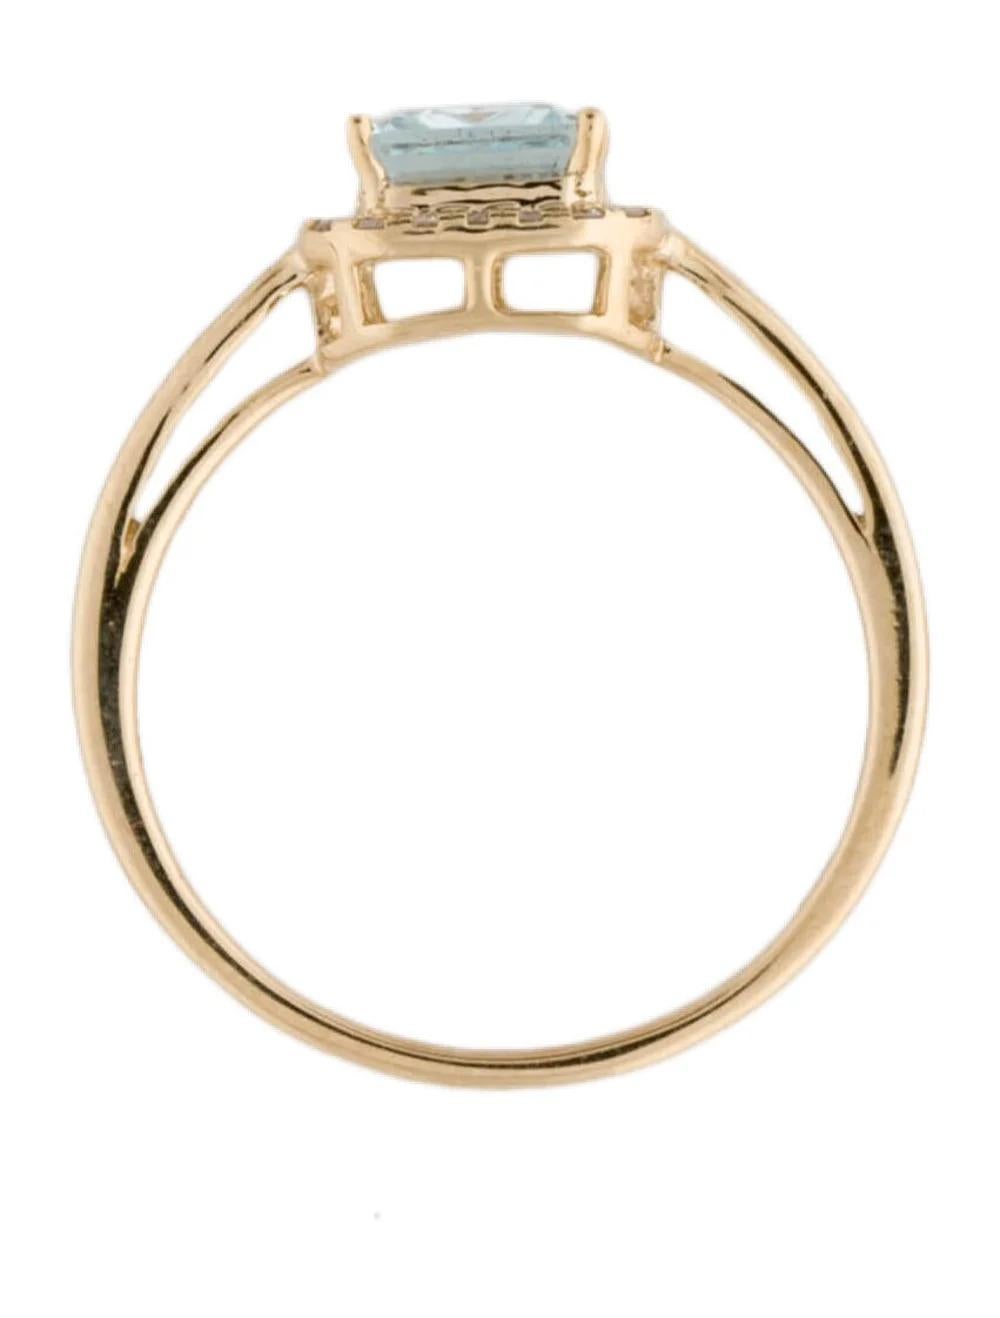 Women's 14K Aquamarine & Diamond Halo Ring 1.34ct - Size 7 - Elegant Blue Gemstone